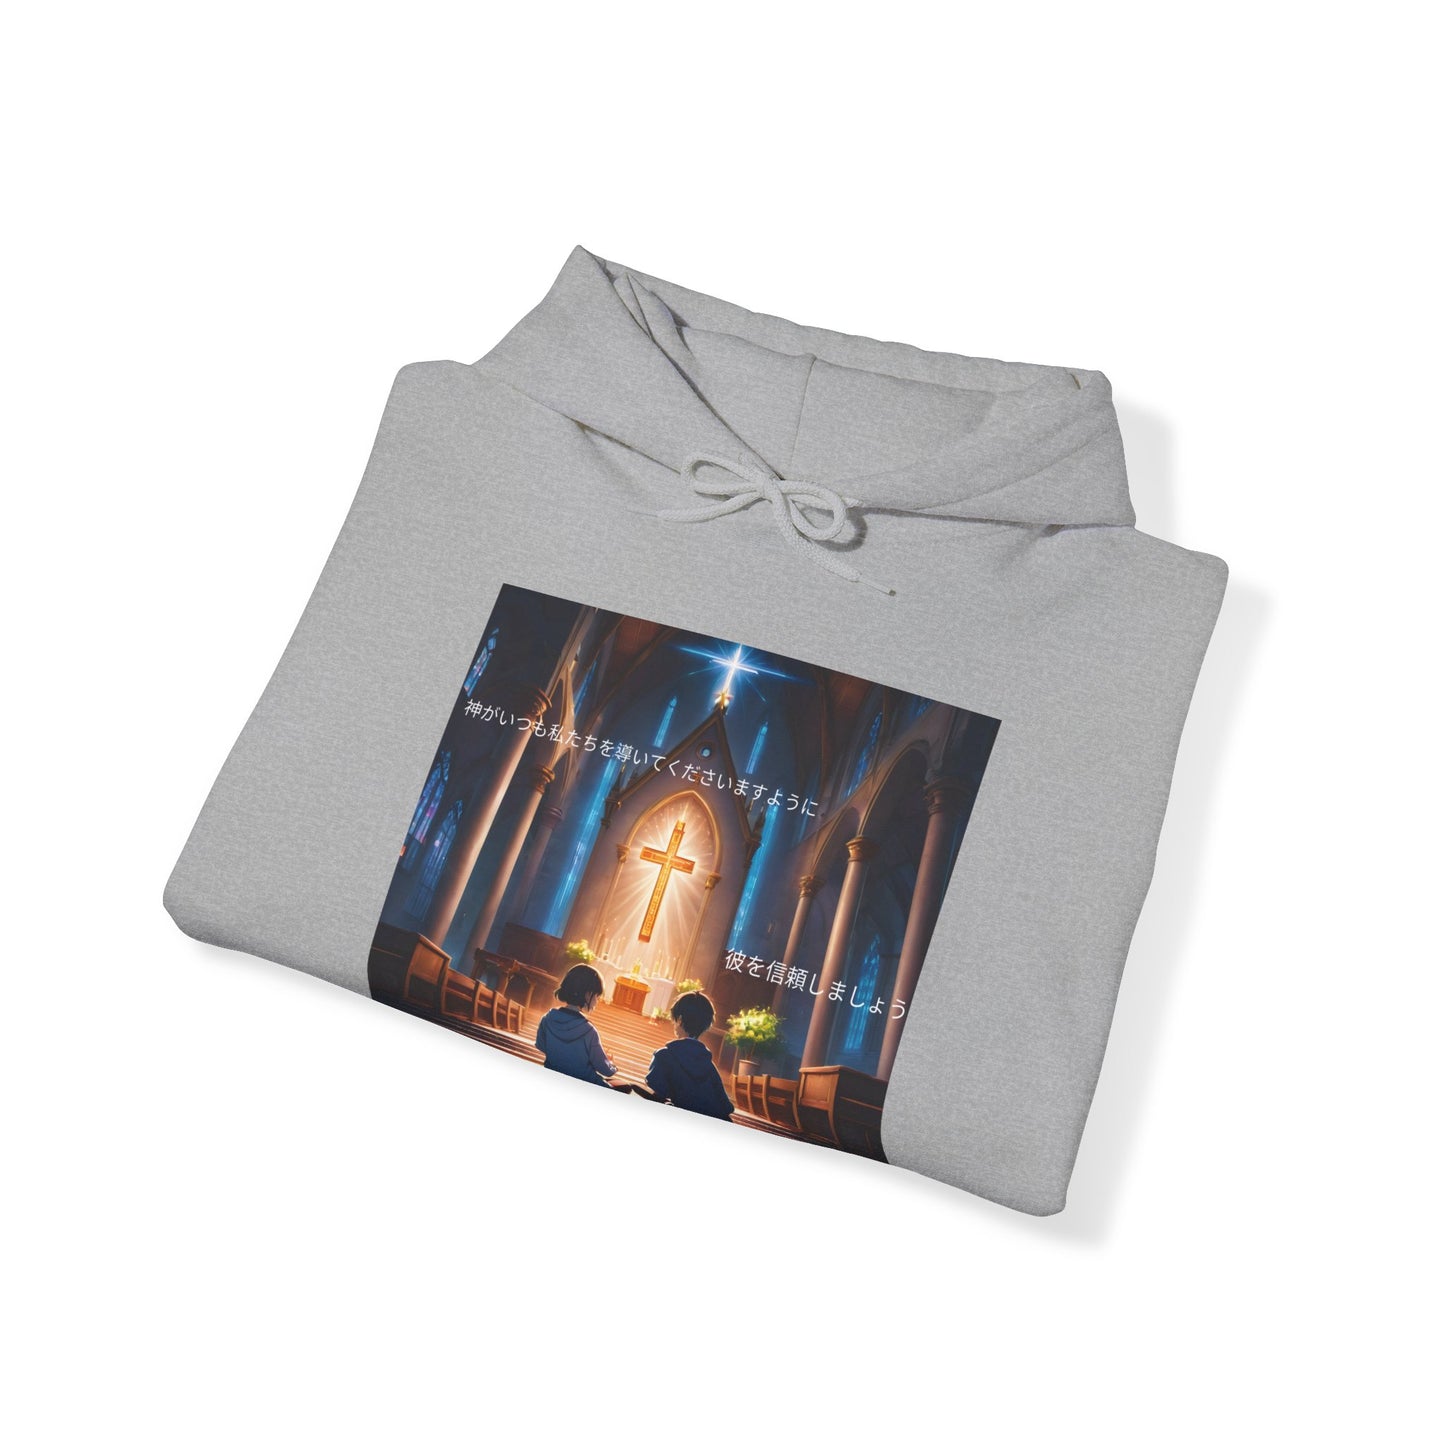 "In God we trust" Double Print Unisex Heavy Blend™ Hooded Sweatshirt